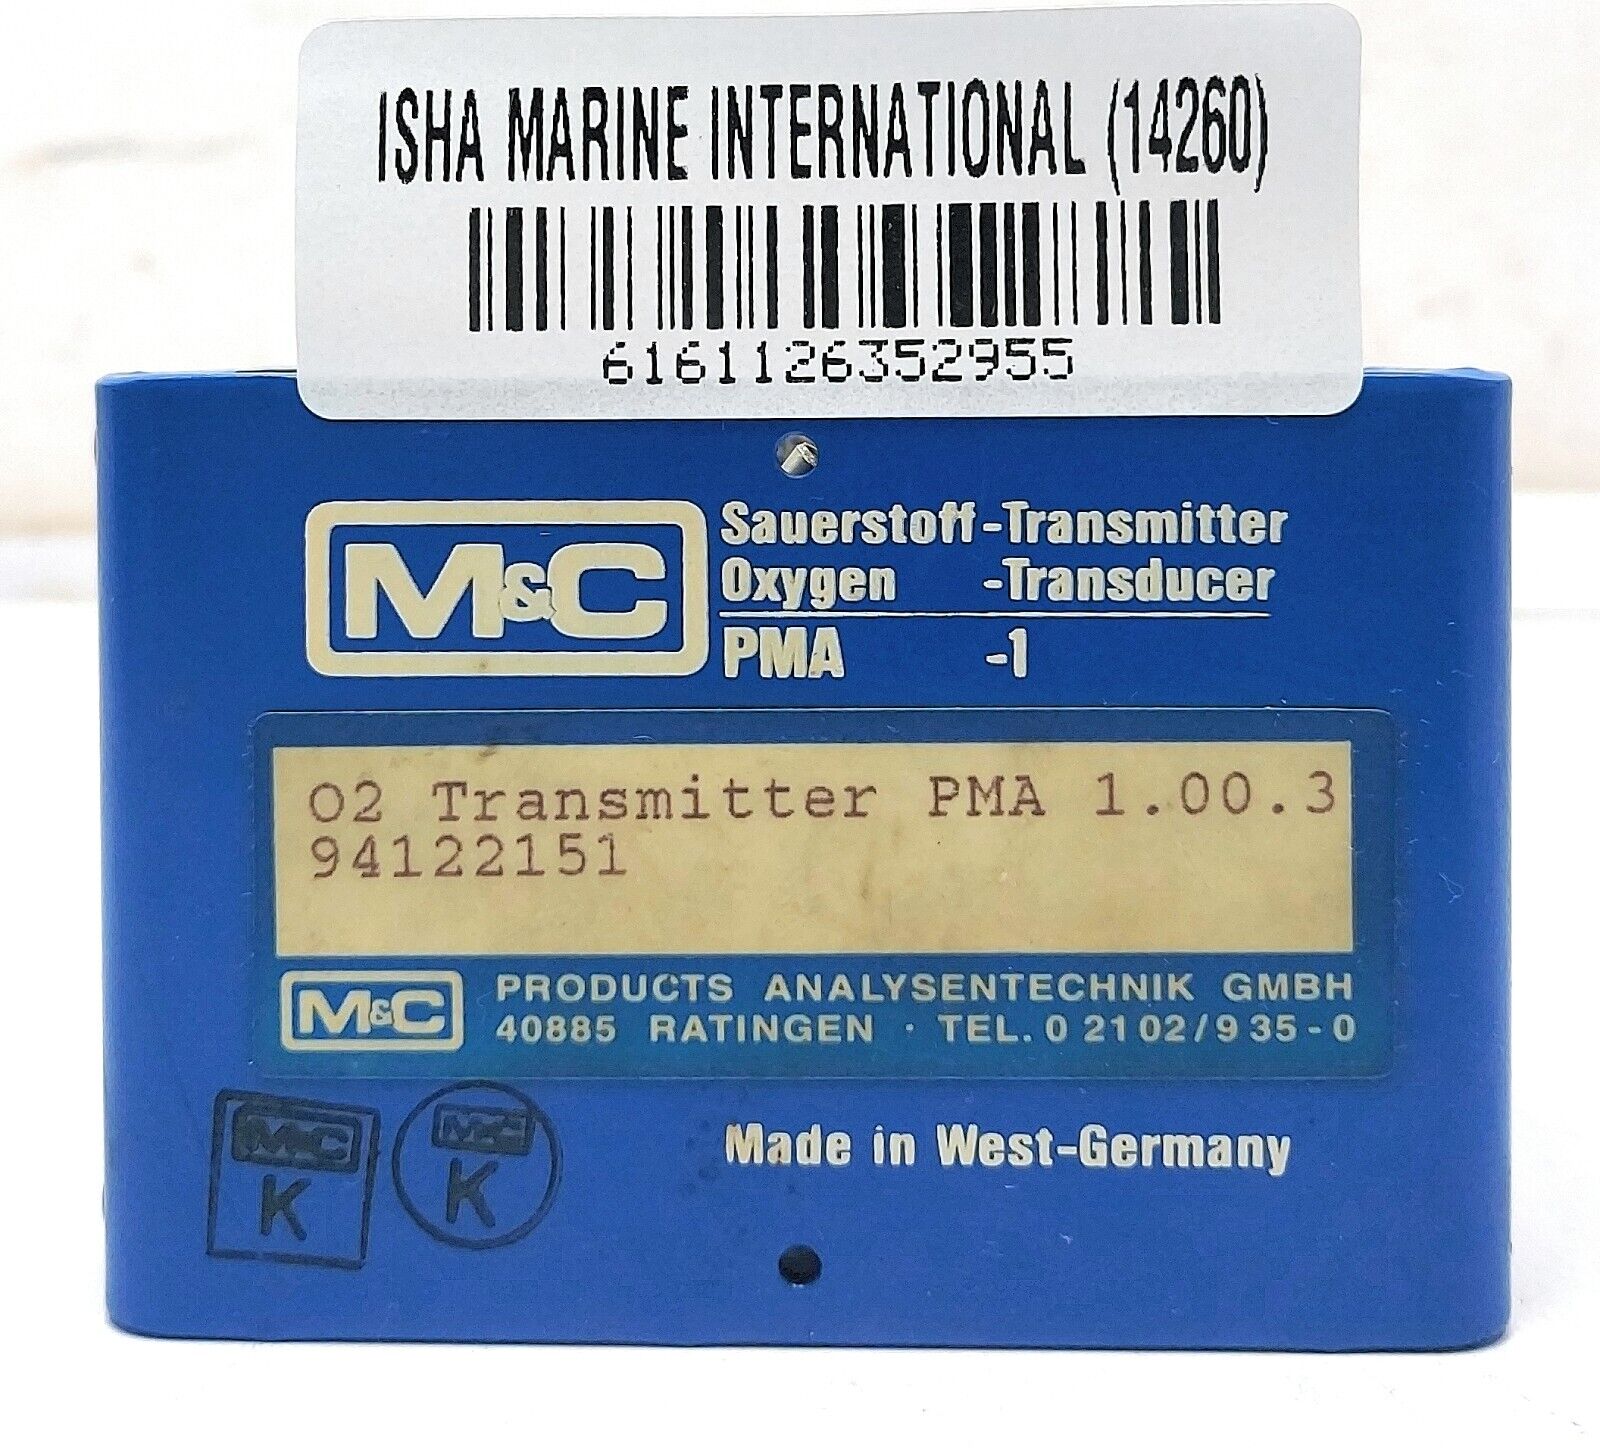 M&C O2 Transmitter PMA 1.00.3 | Oxygen Transducer